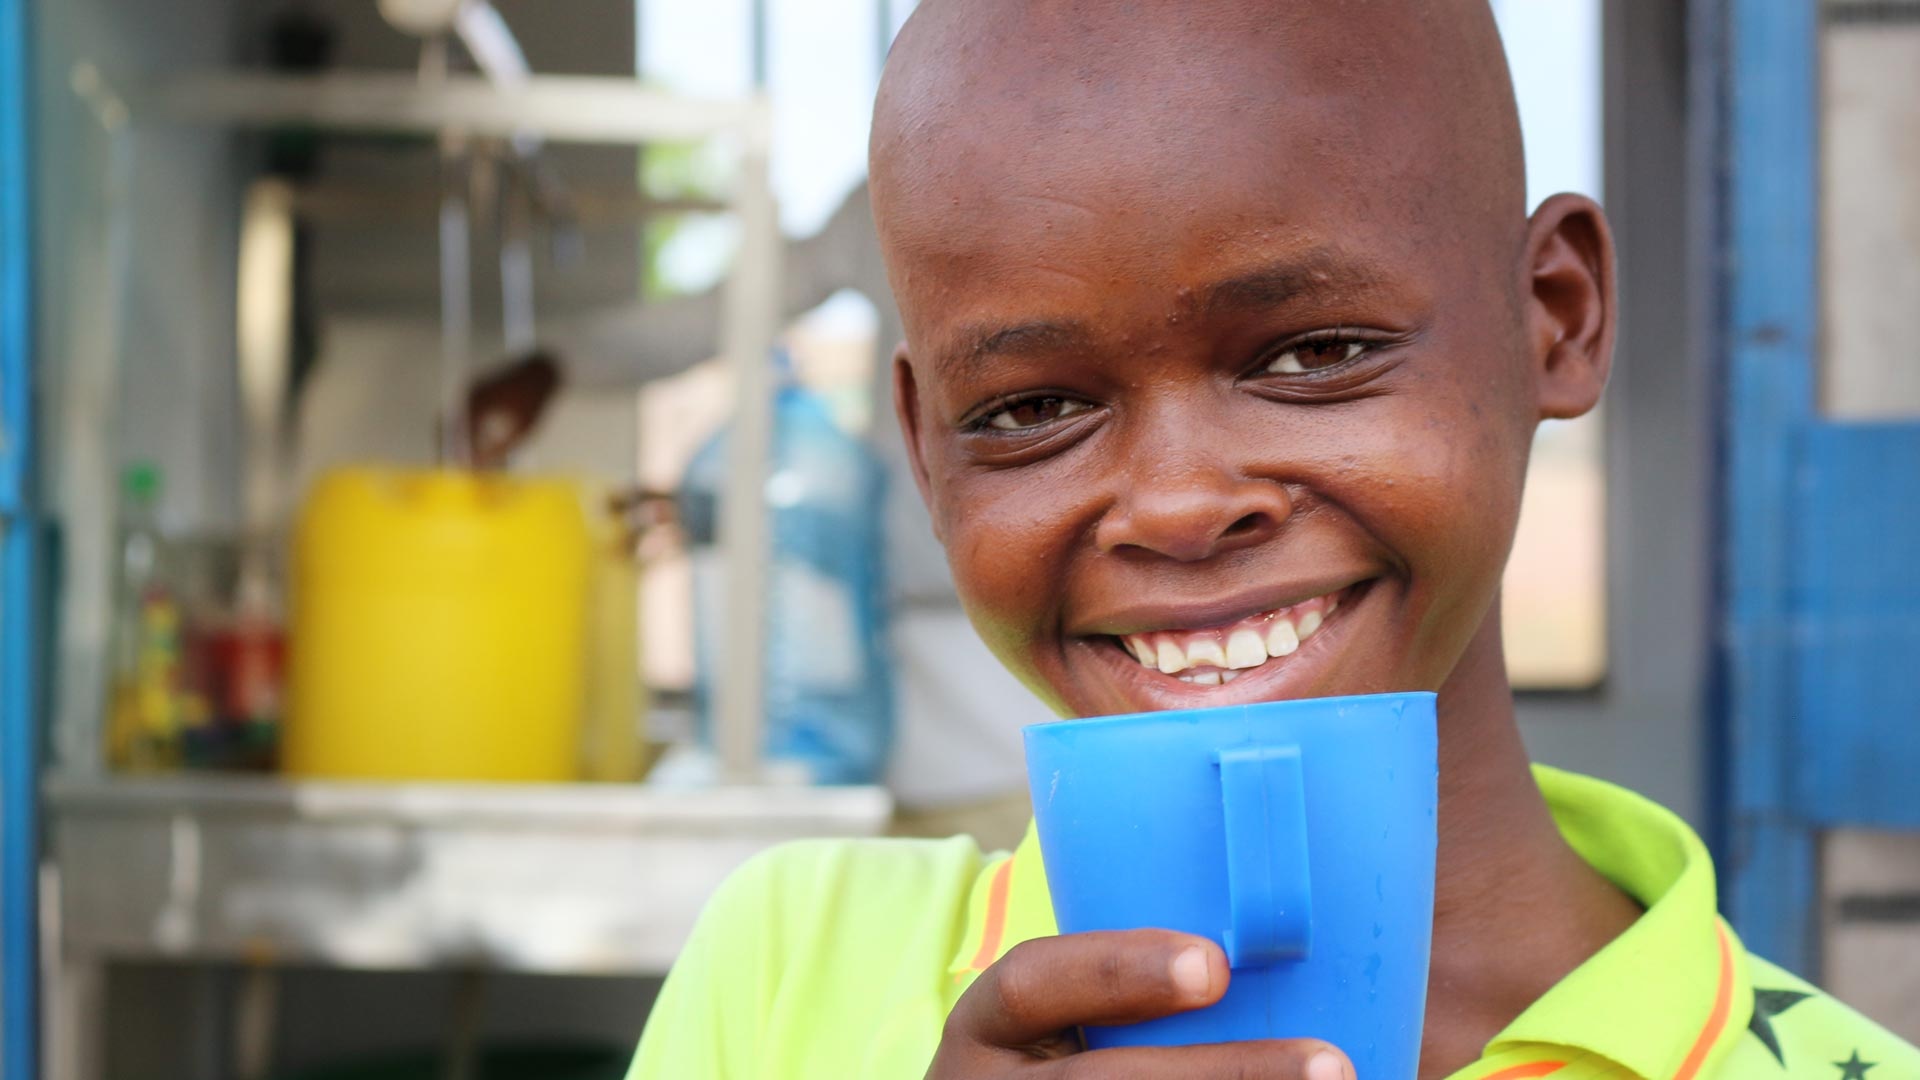 Ein kenianischer Junge trinkt Wasser aus einem blauen Wasserbecher und lacht